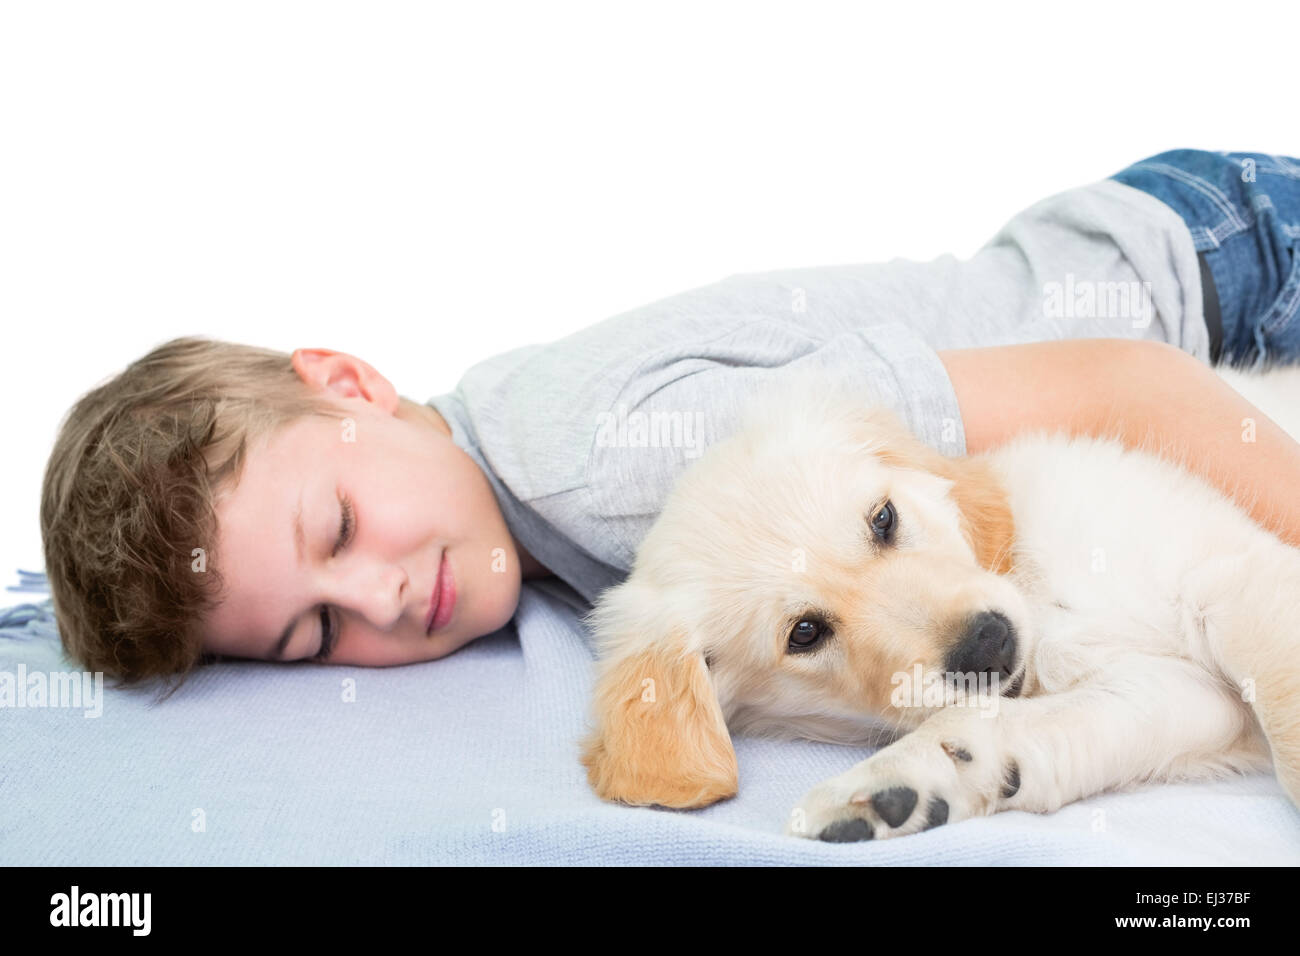 Boy sleeping with dog on blanket Stock Photo